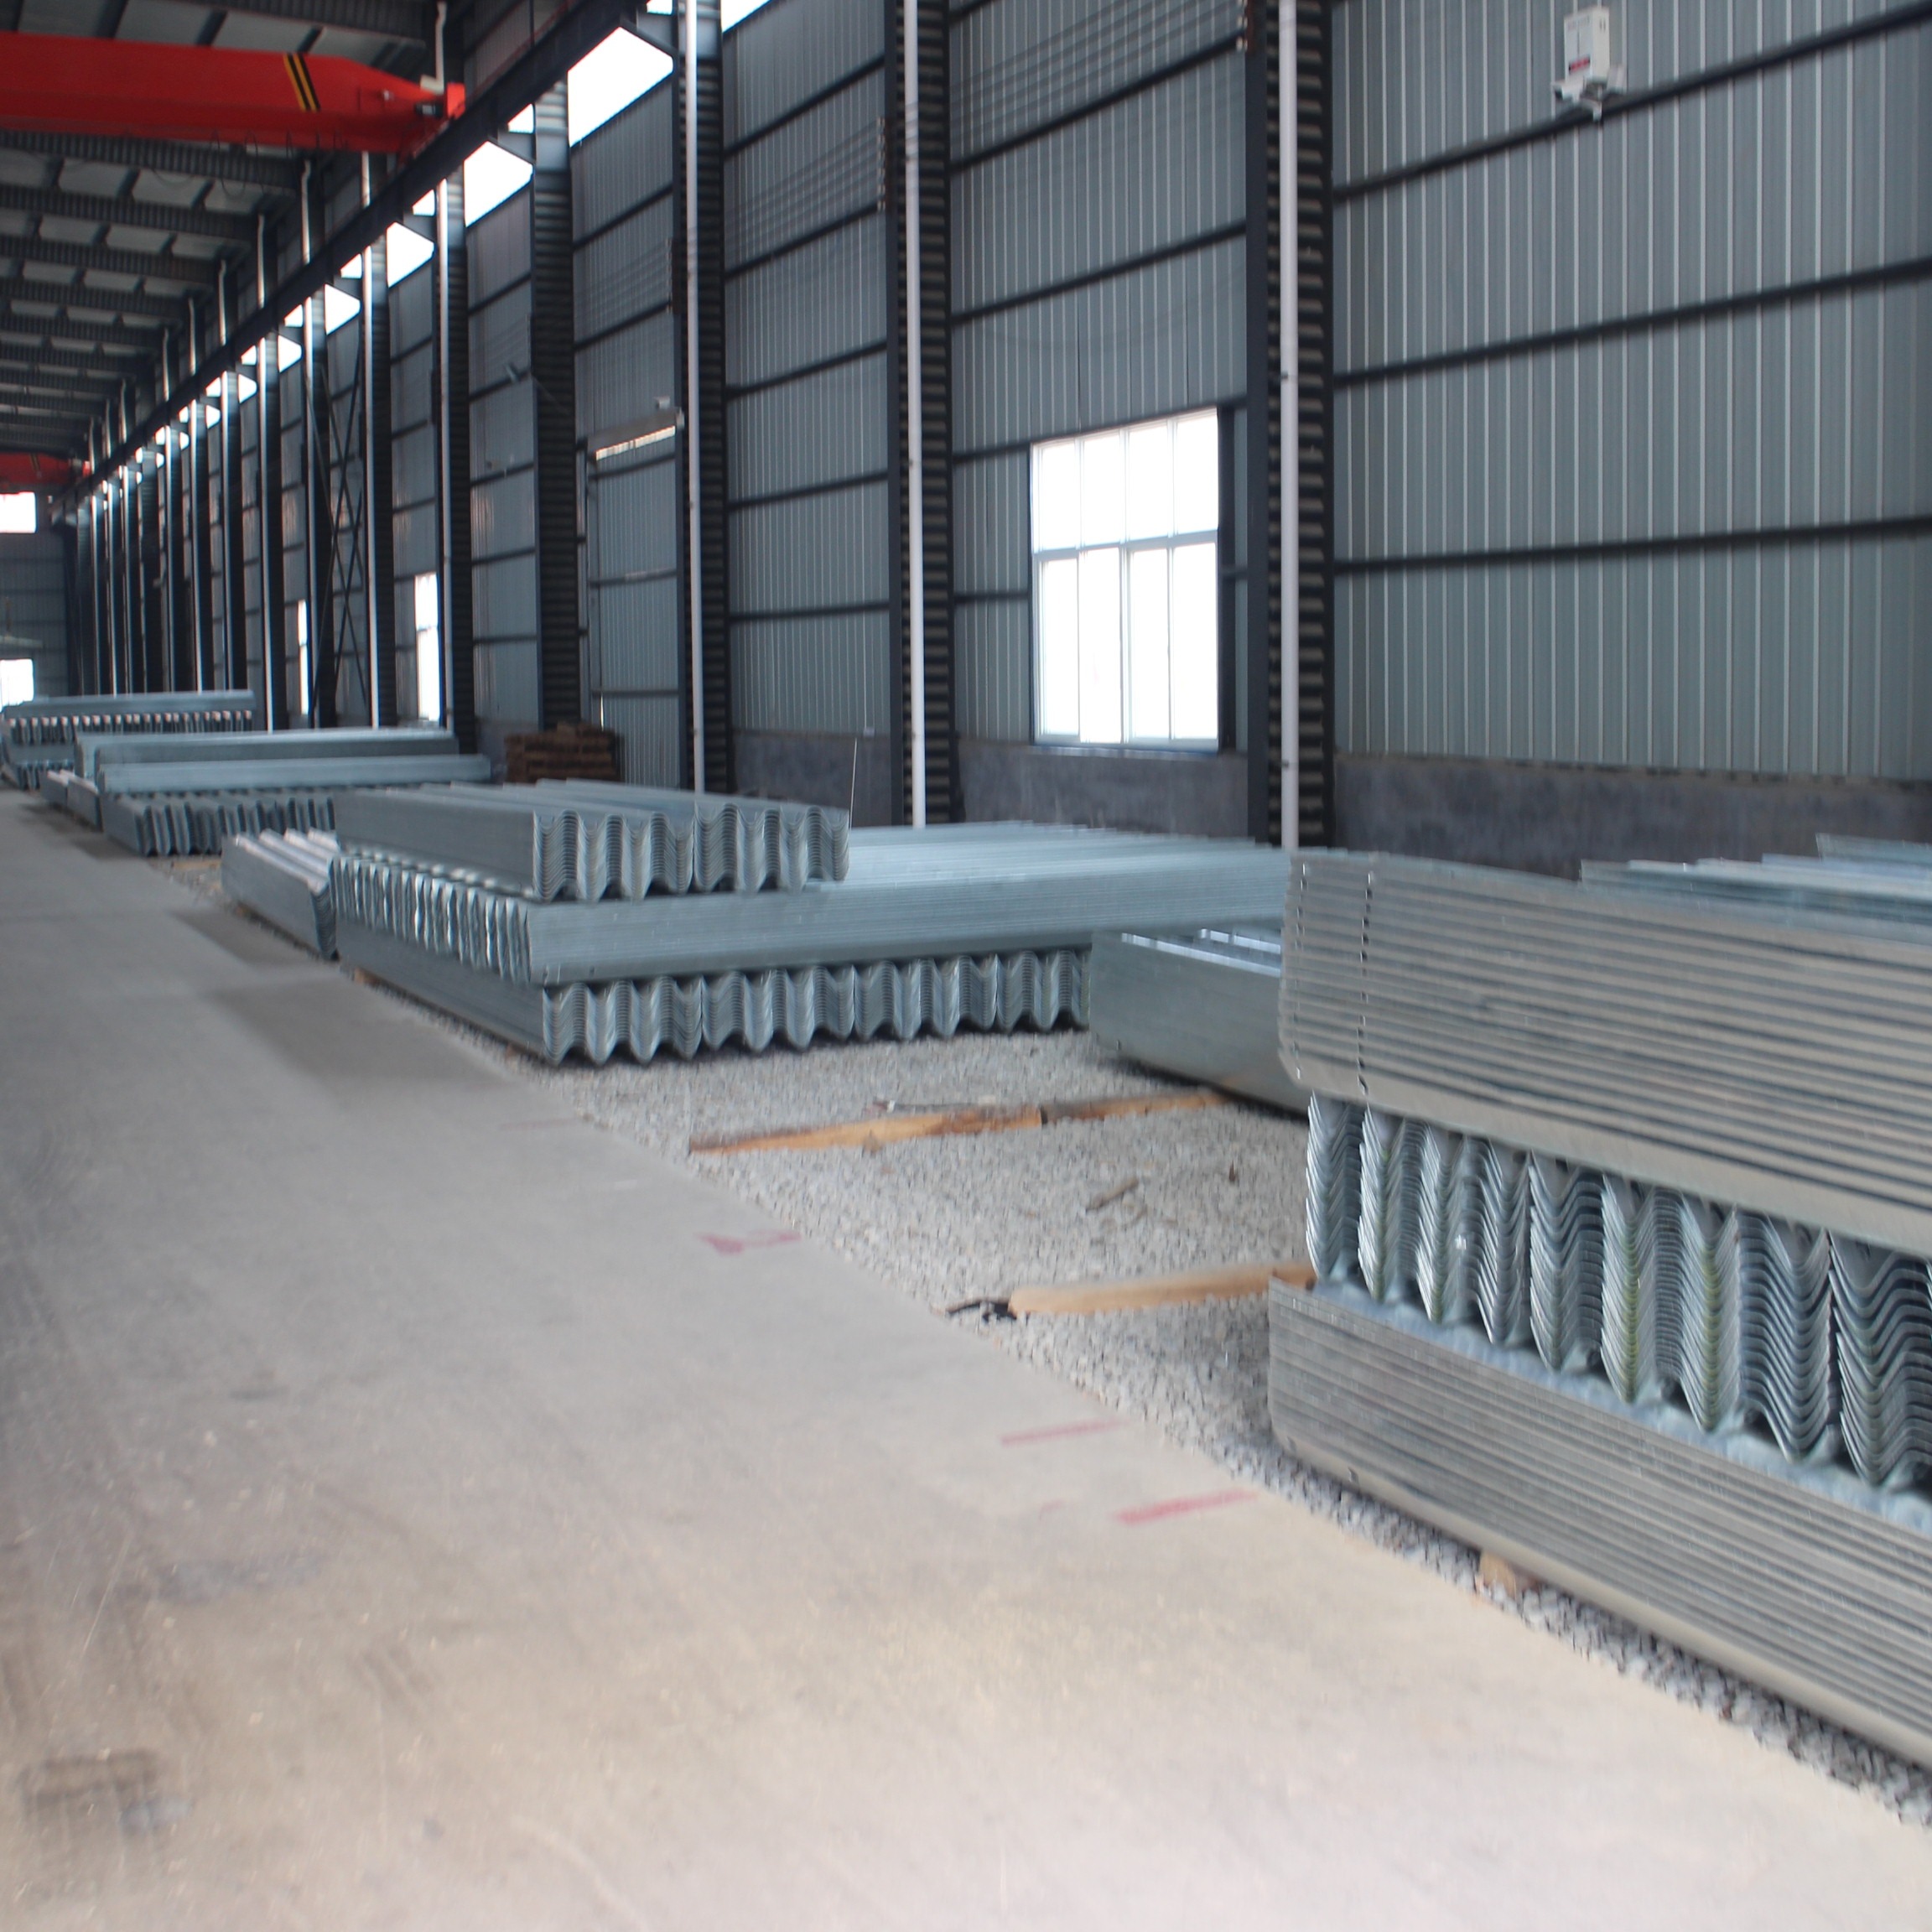 曙生复合材料 定制生产 波形护栏 波形护栏板  可在小半径弯道上运用，损害处简单替换 价格优惠 厂家直销